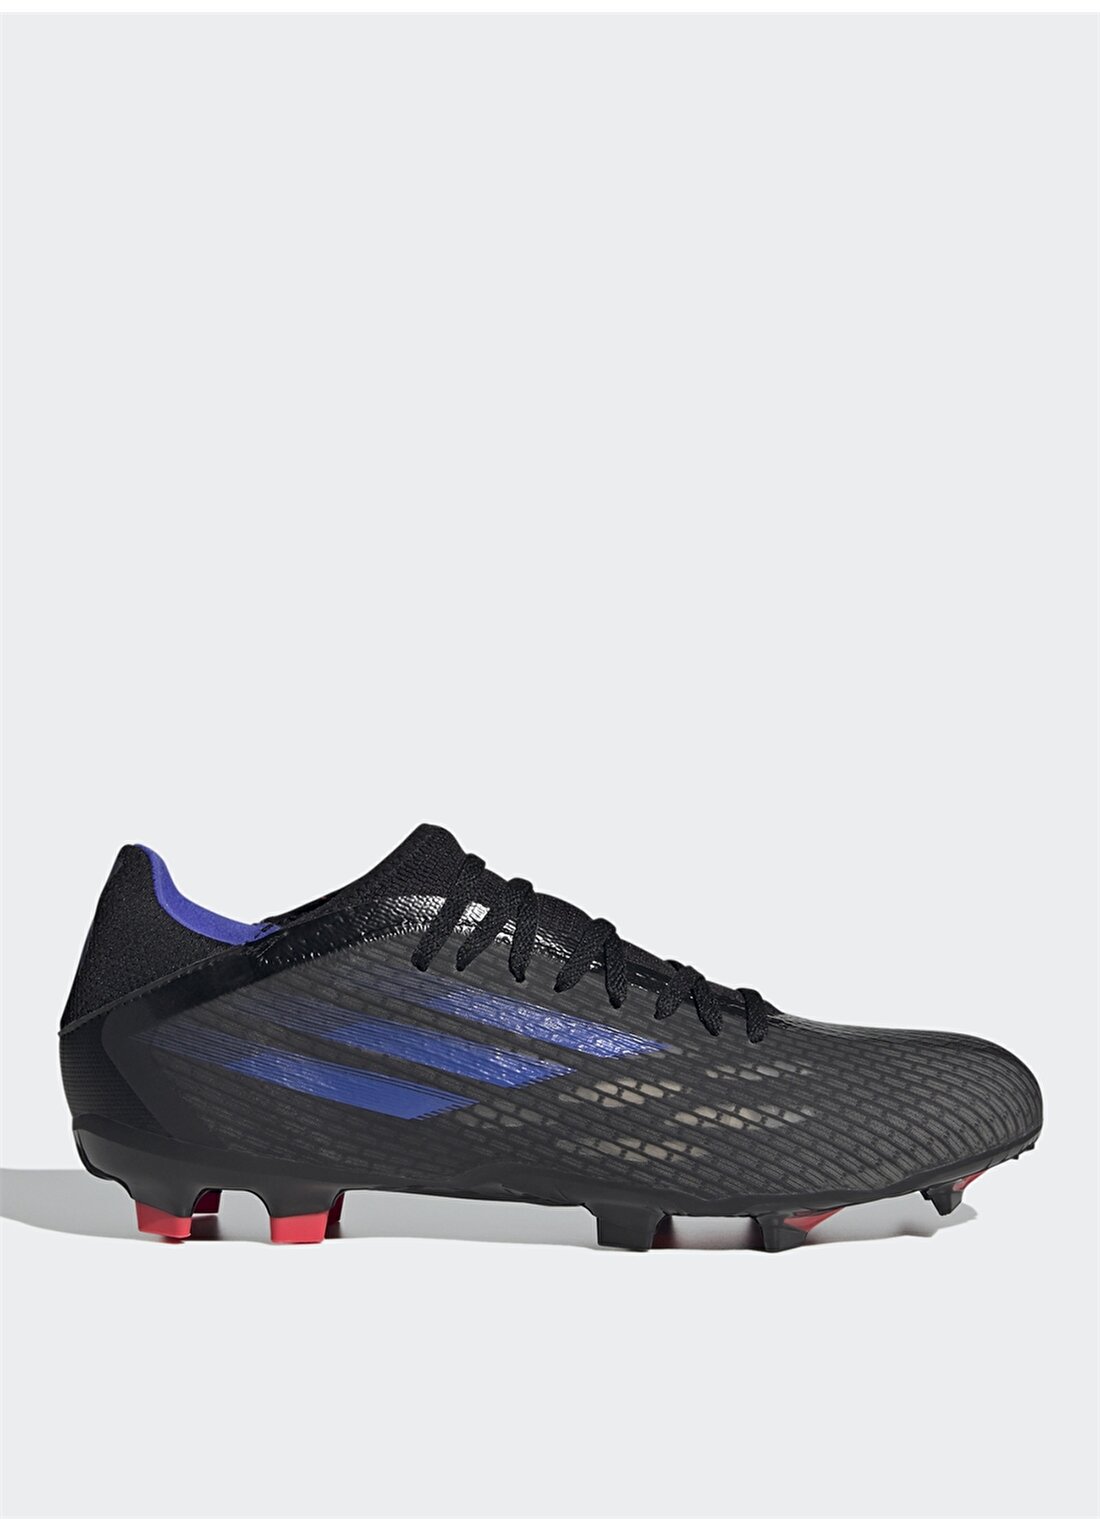 Adidas Fy3296 X Speedflow.3 Fg Siyah - Mavi - Sarı Erkek Futbol Ayakkabısı